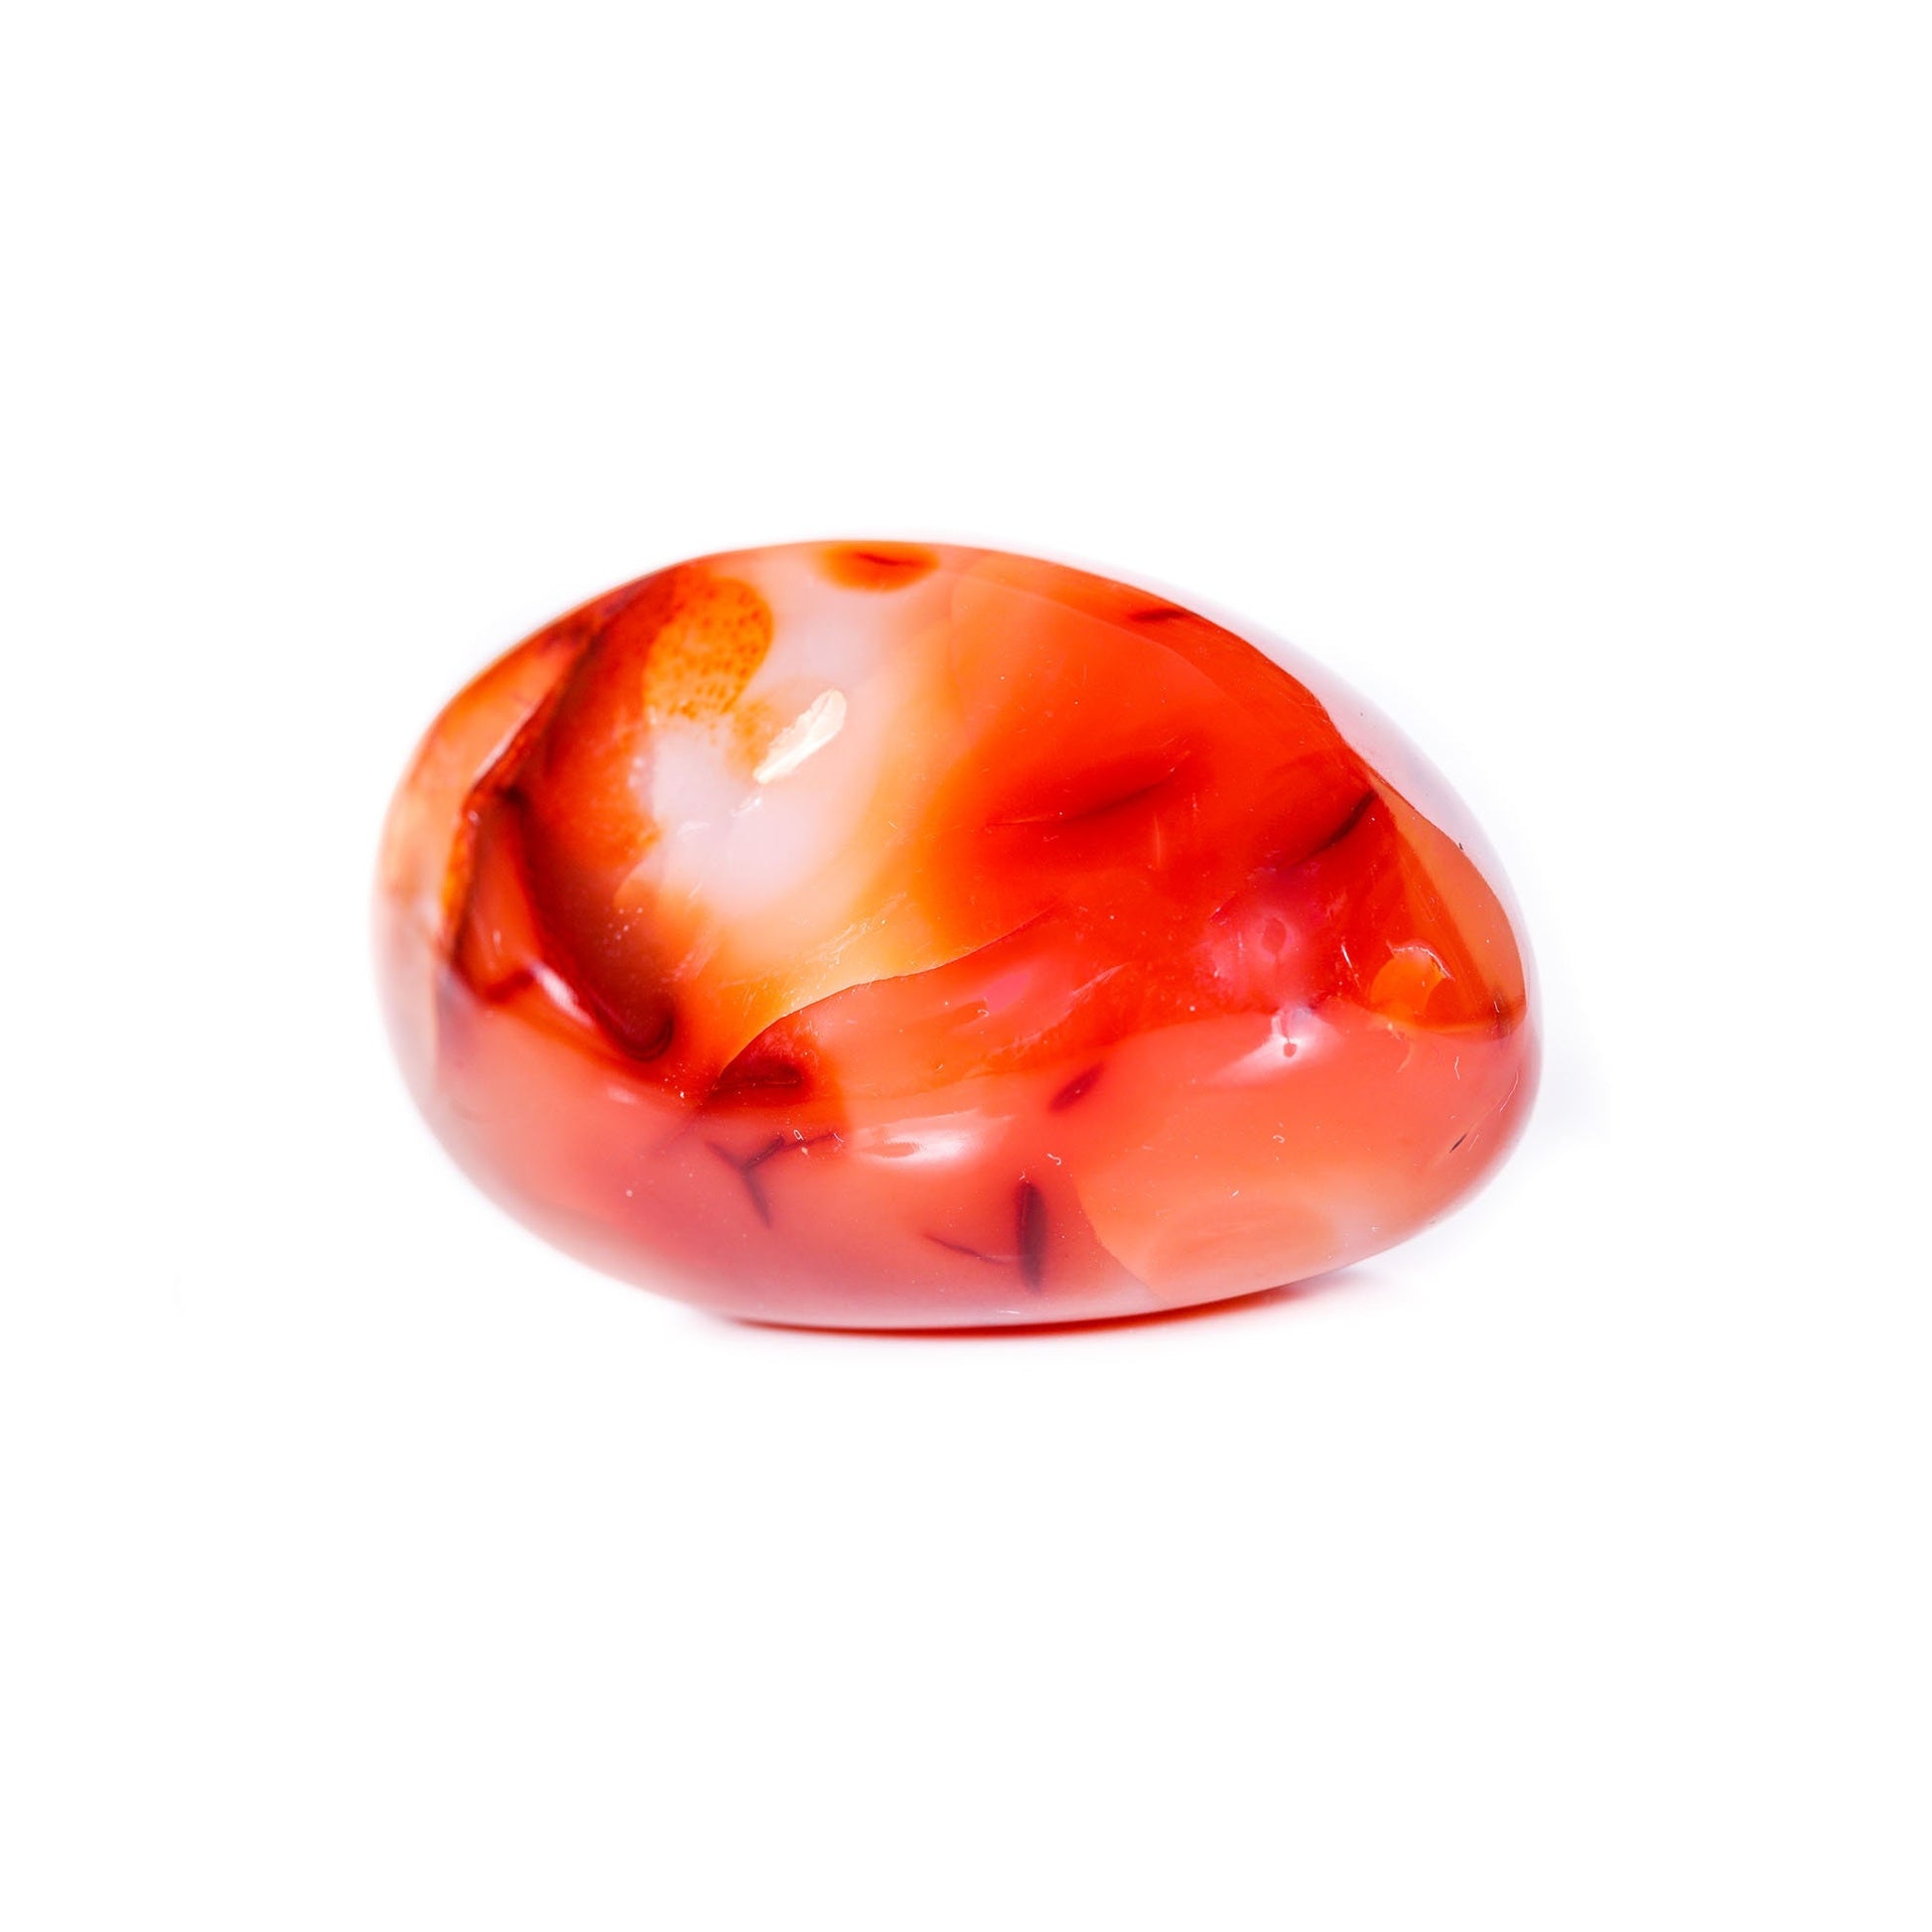 Red Carnelian Necklace | Gemstone Wire Wrap Crystal Jewellery | July Birthstone | Virgo Zodiac Crystals